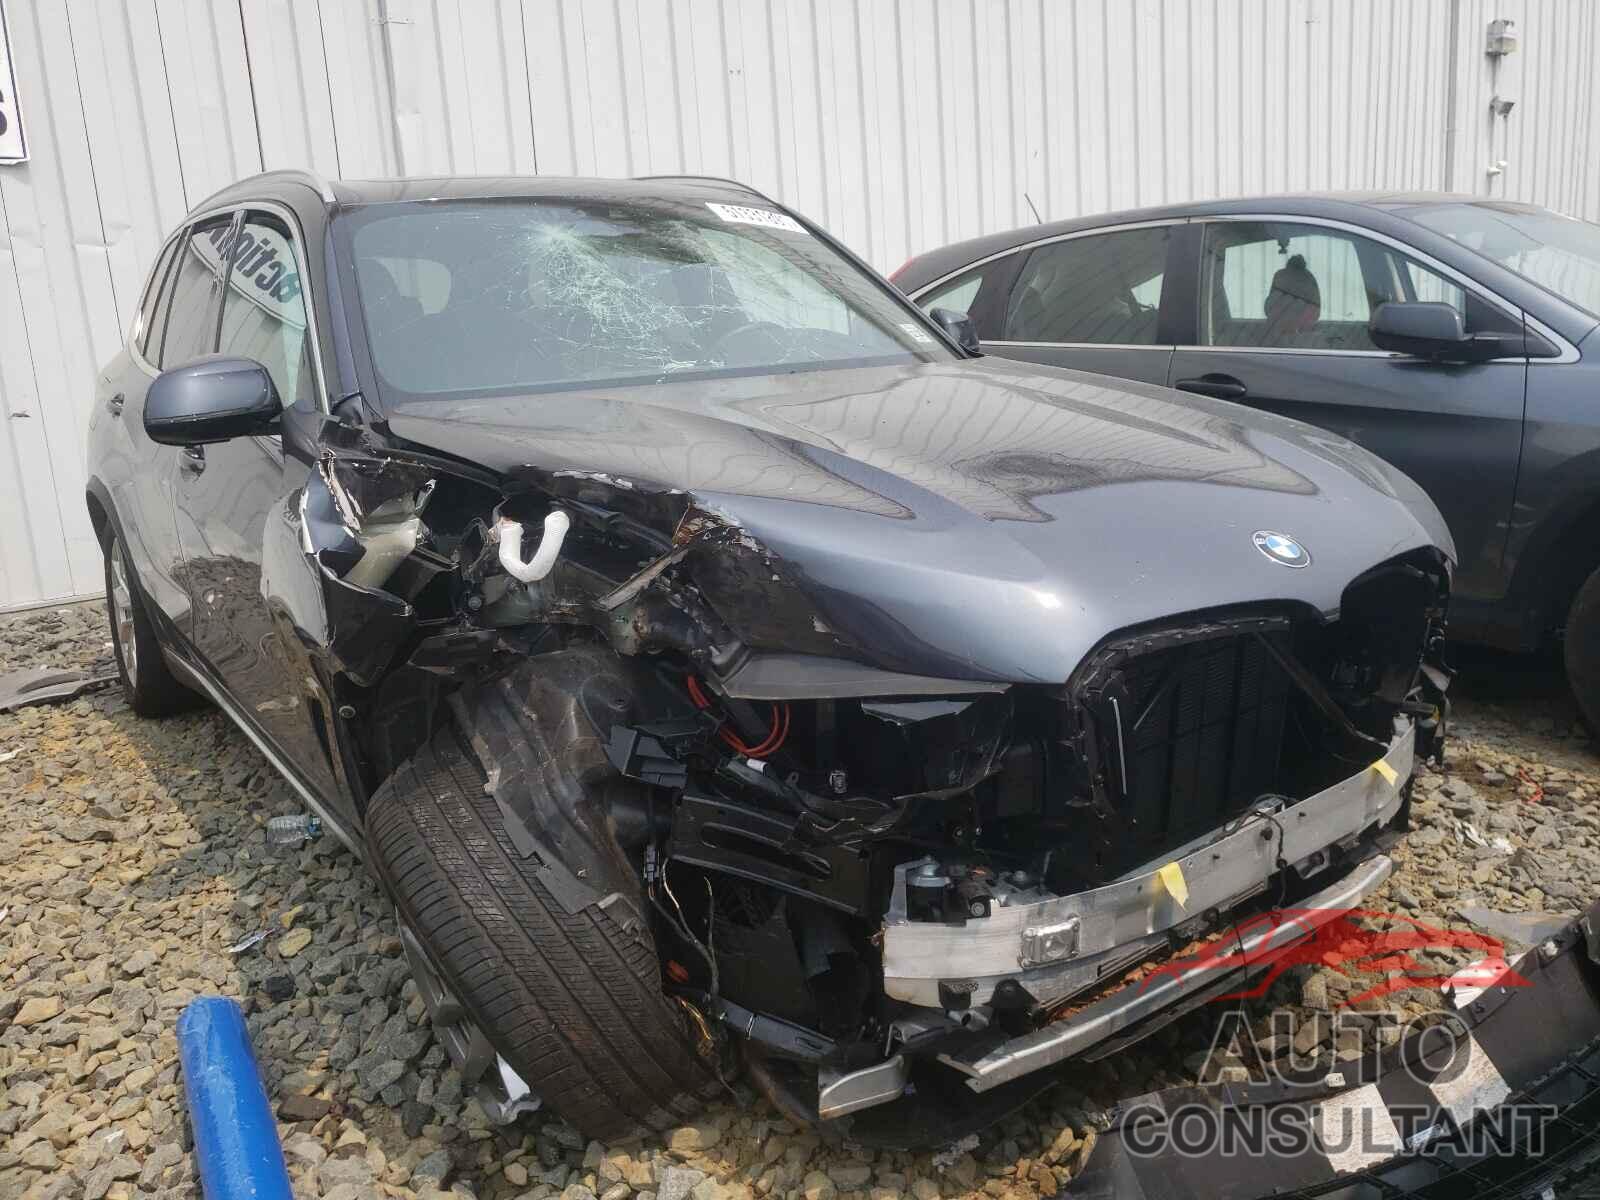 BMW X5 2019 - 5UXCR6C57KLK85163